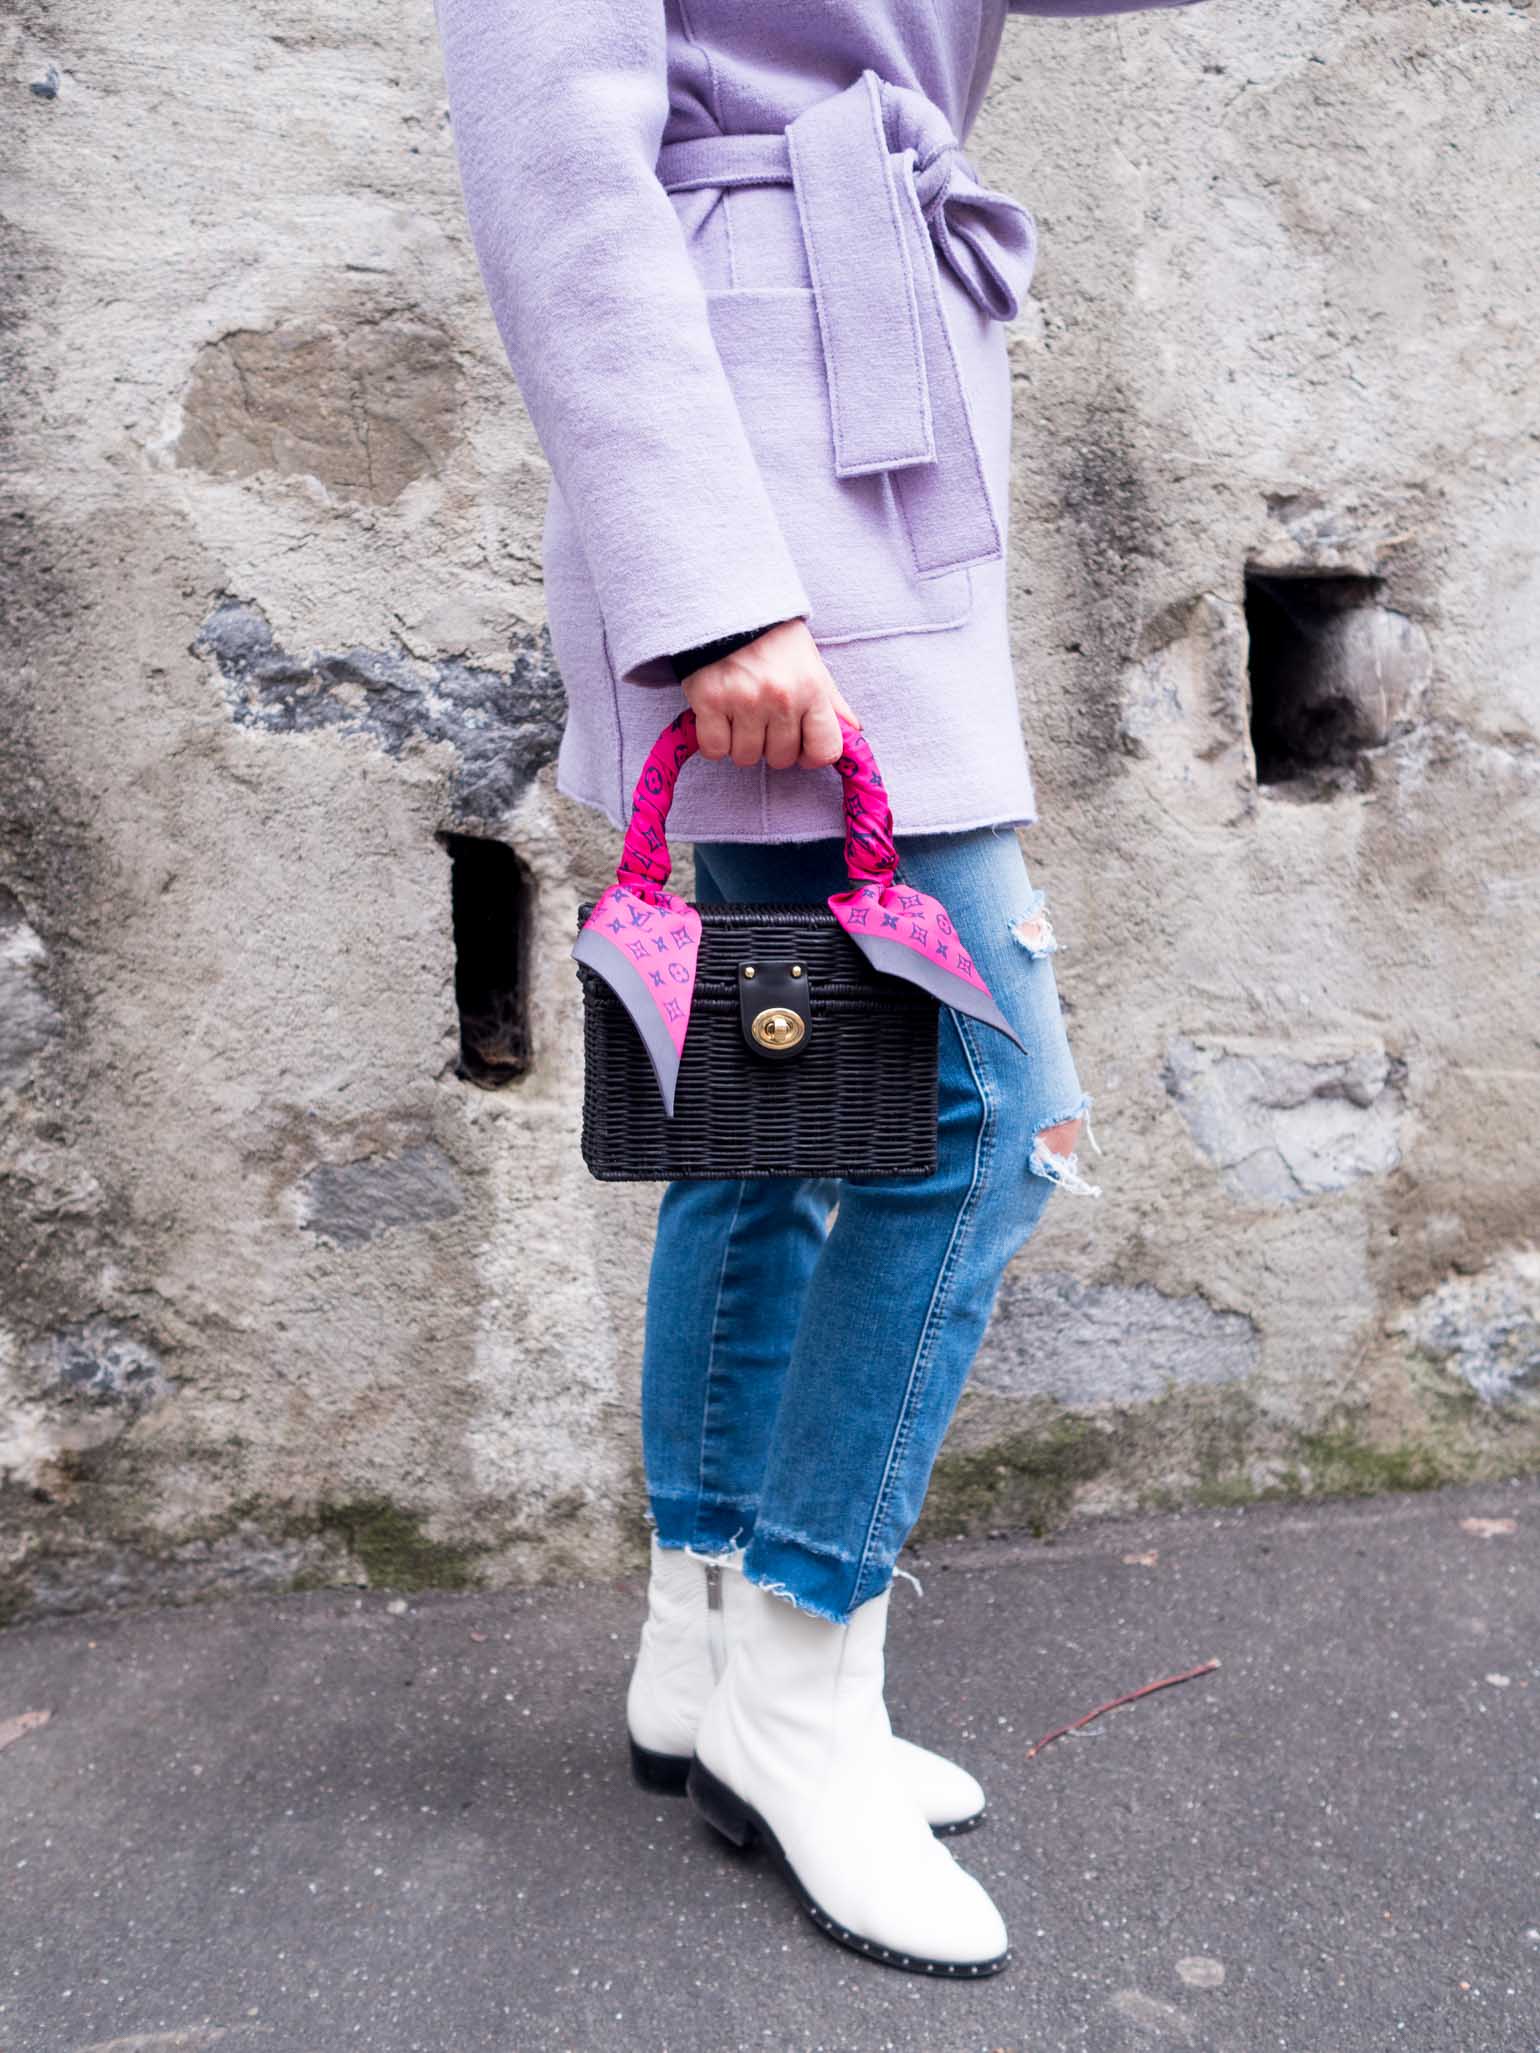 Zara woven bag in the winter - Dallas fashion blogger